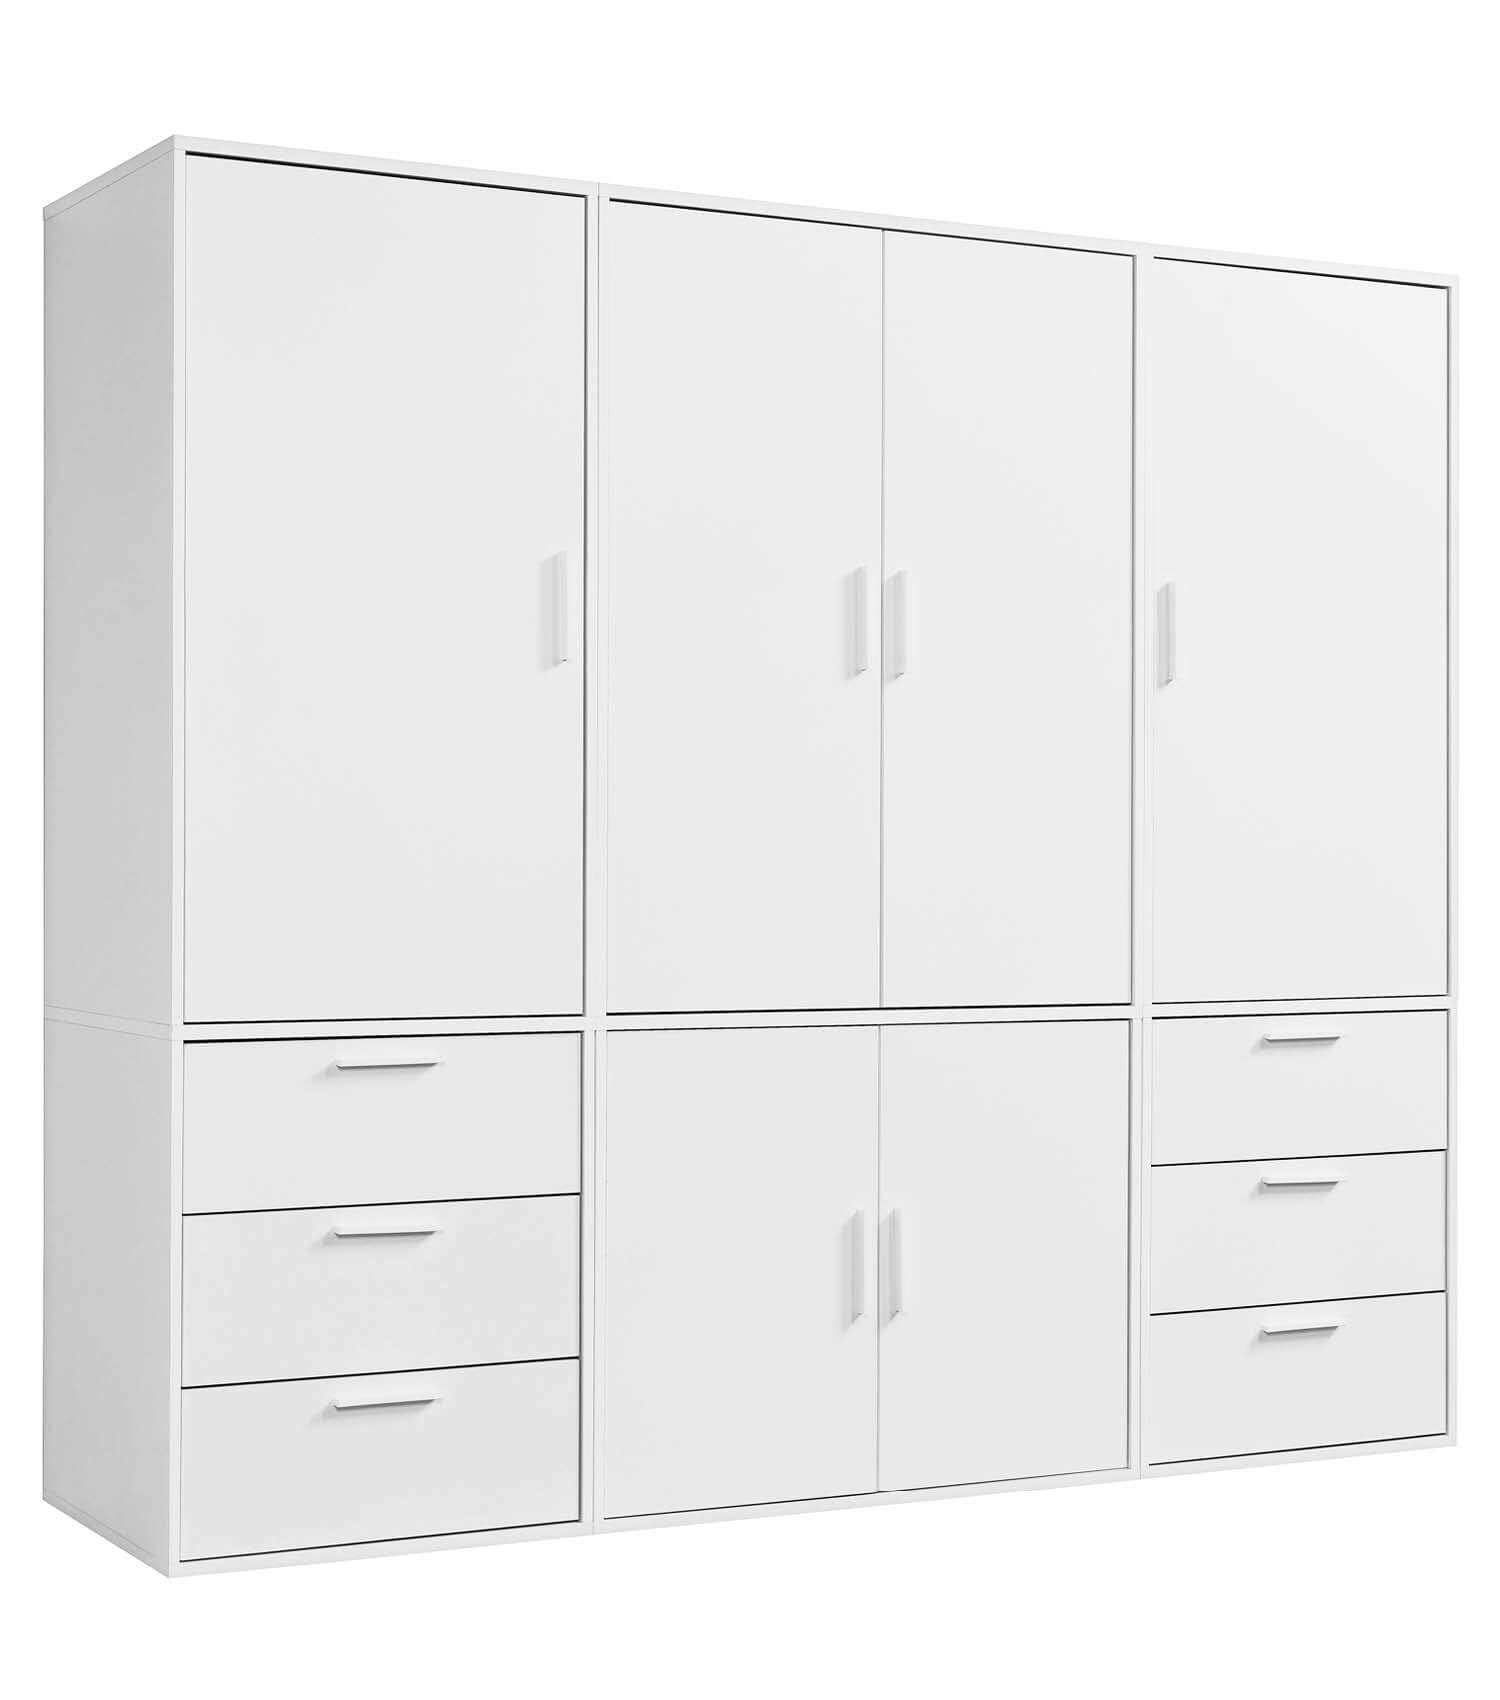 mokebo Kleiderschrank Der Grenzenlose (6-Türig & 6 Schubladen) Garderobenschrank, Schlafzimmerschrank oder Schrank groß in Weiß